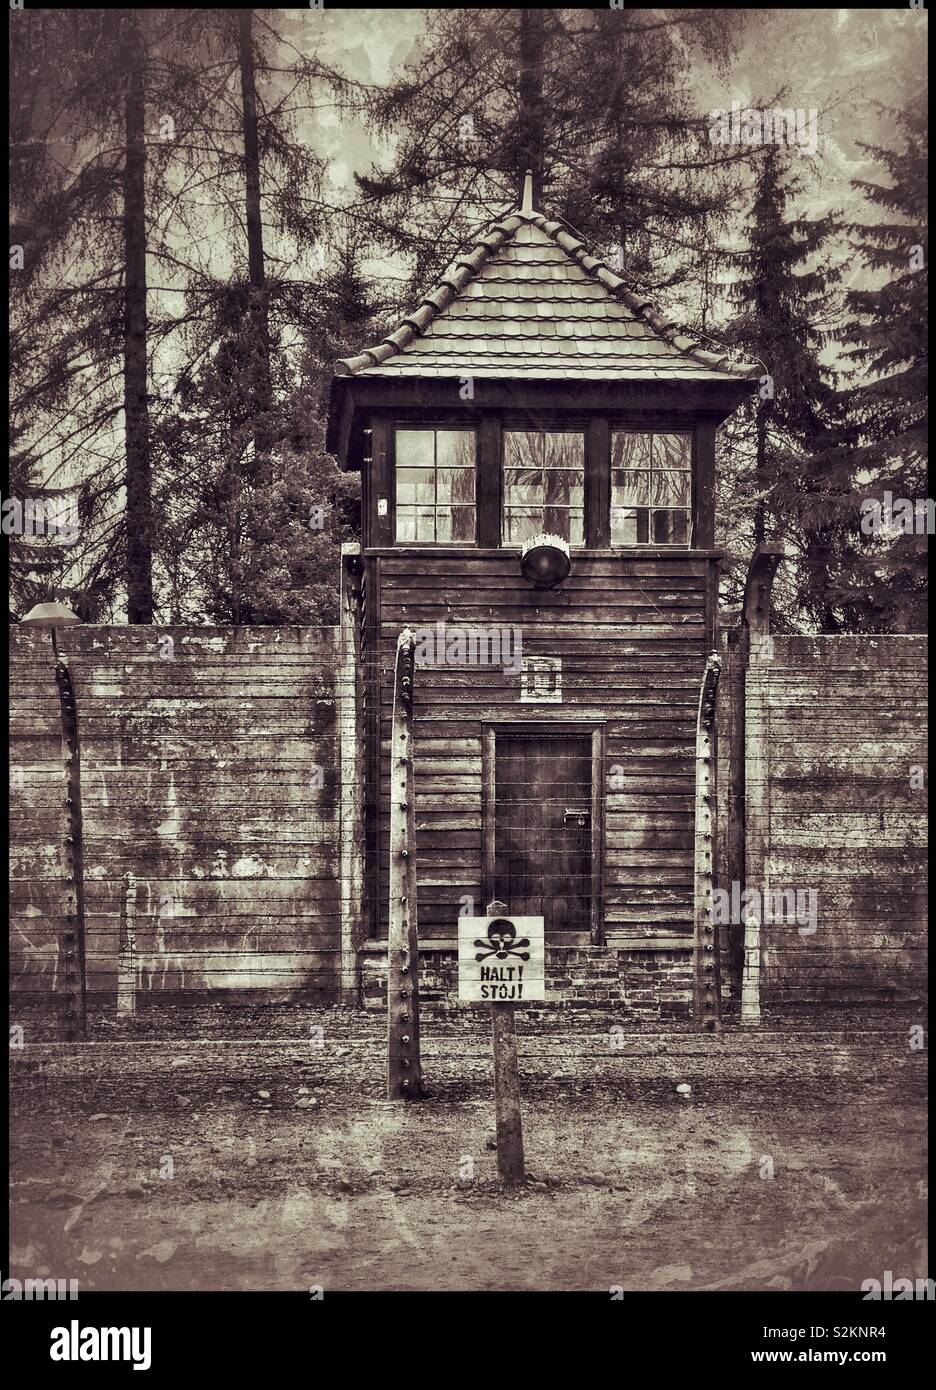 Ein grunge Effekt Bild von 1 der Wachtürme und der elektrischen Zaun an der NS-Konzentrationslager Auschwitz in Polen. Eine Website von Massenmord während WW 2. Jetzt ein Memorial Museum & Weltkulturerbe. Stockfoto